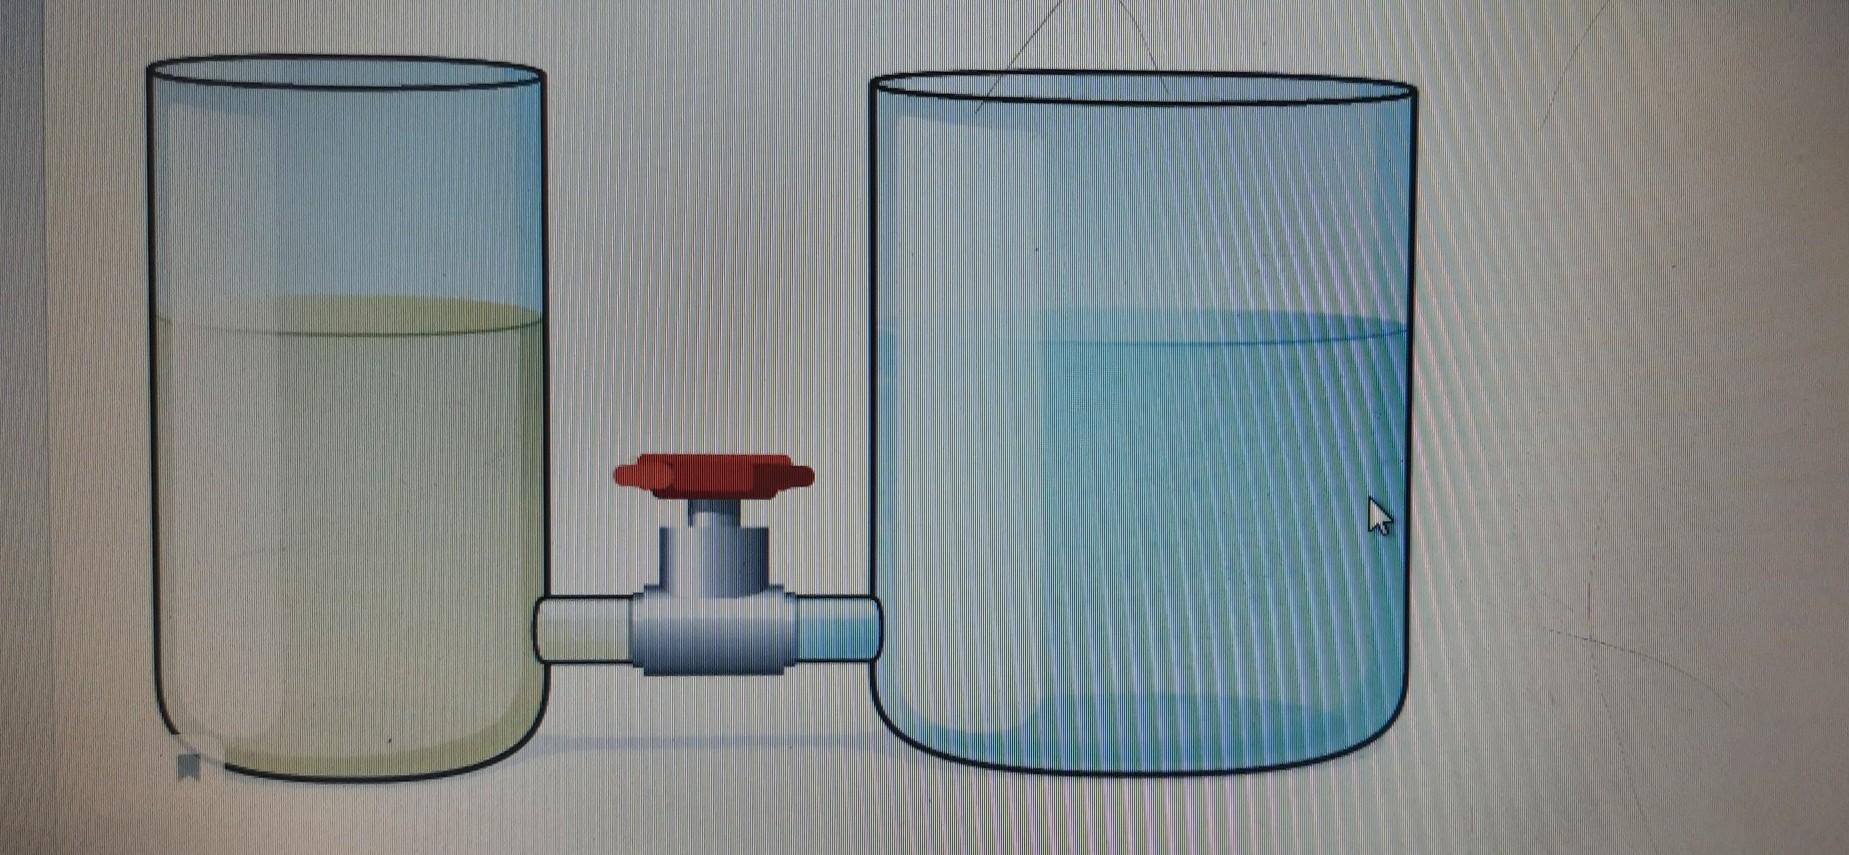 Переливания жидкости в сосудах. Выпрямление пленки при одинаковом уровне воды в трубке и в сосуде. 2 Сосуда наполнены до. Два сосуда наполнены до одинакового уровня. 2 Сосуда наполнены до одинакового уровня.